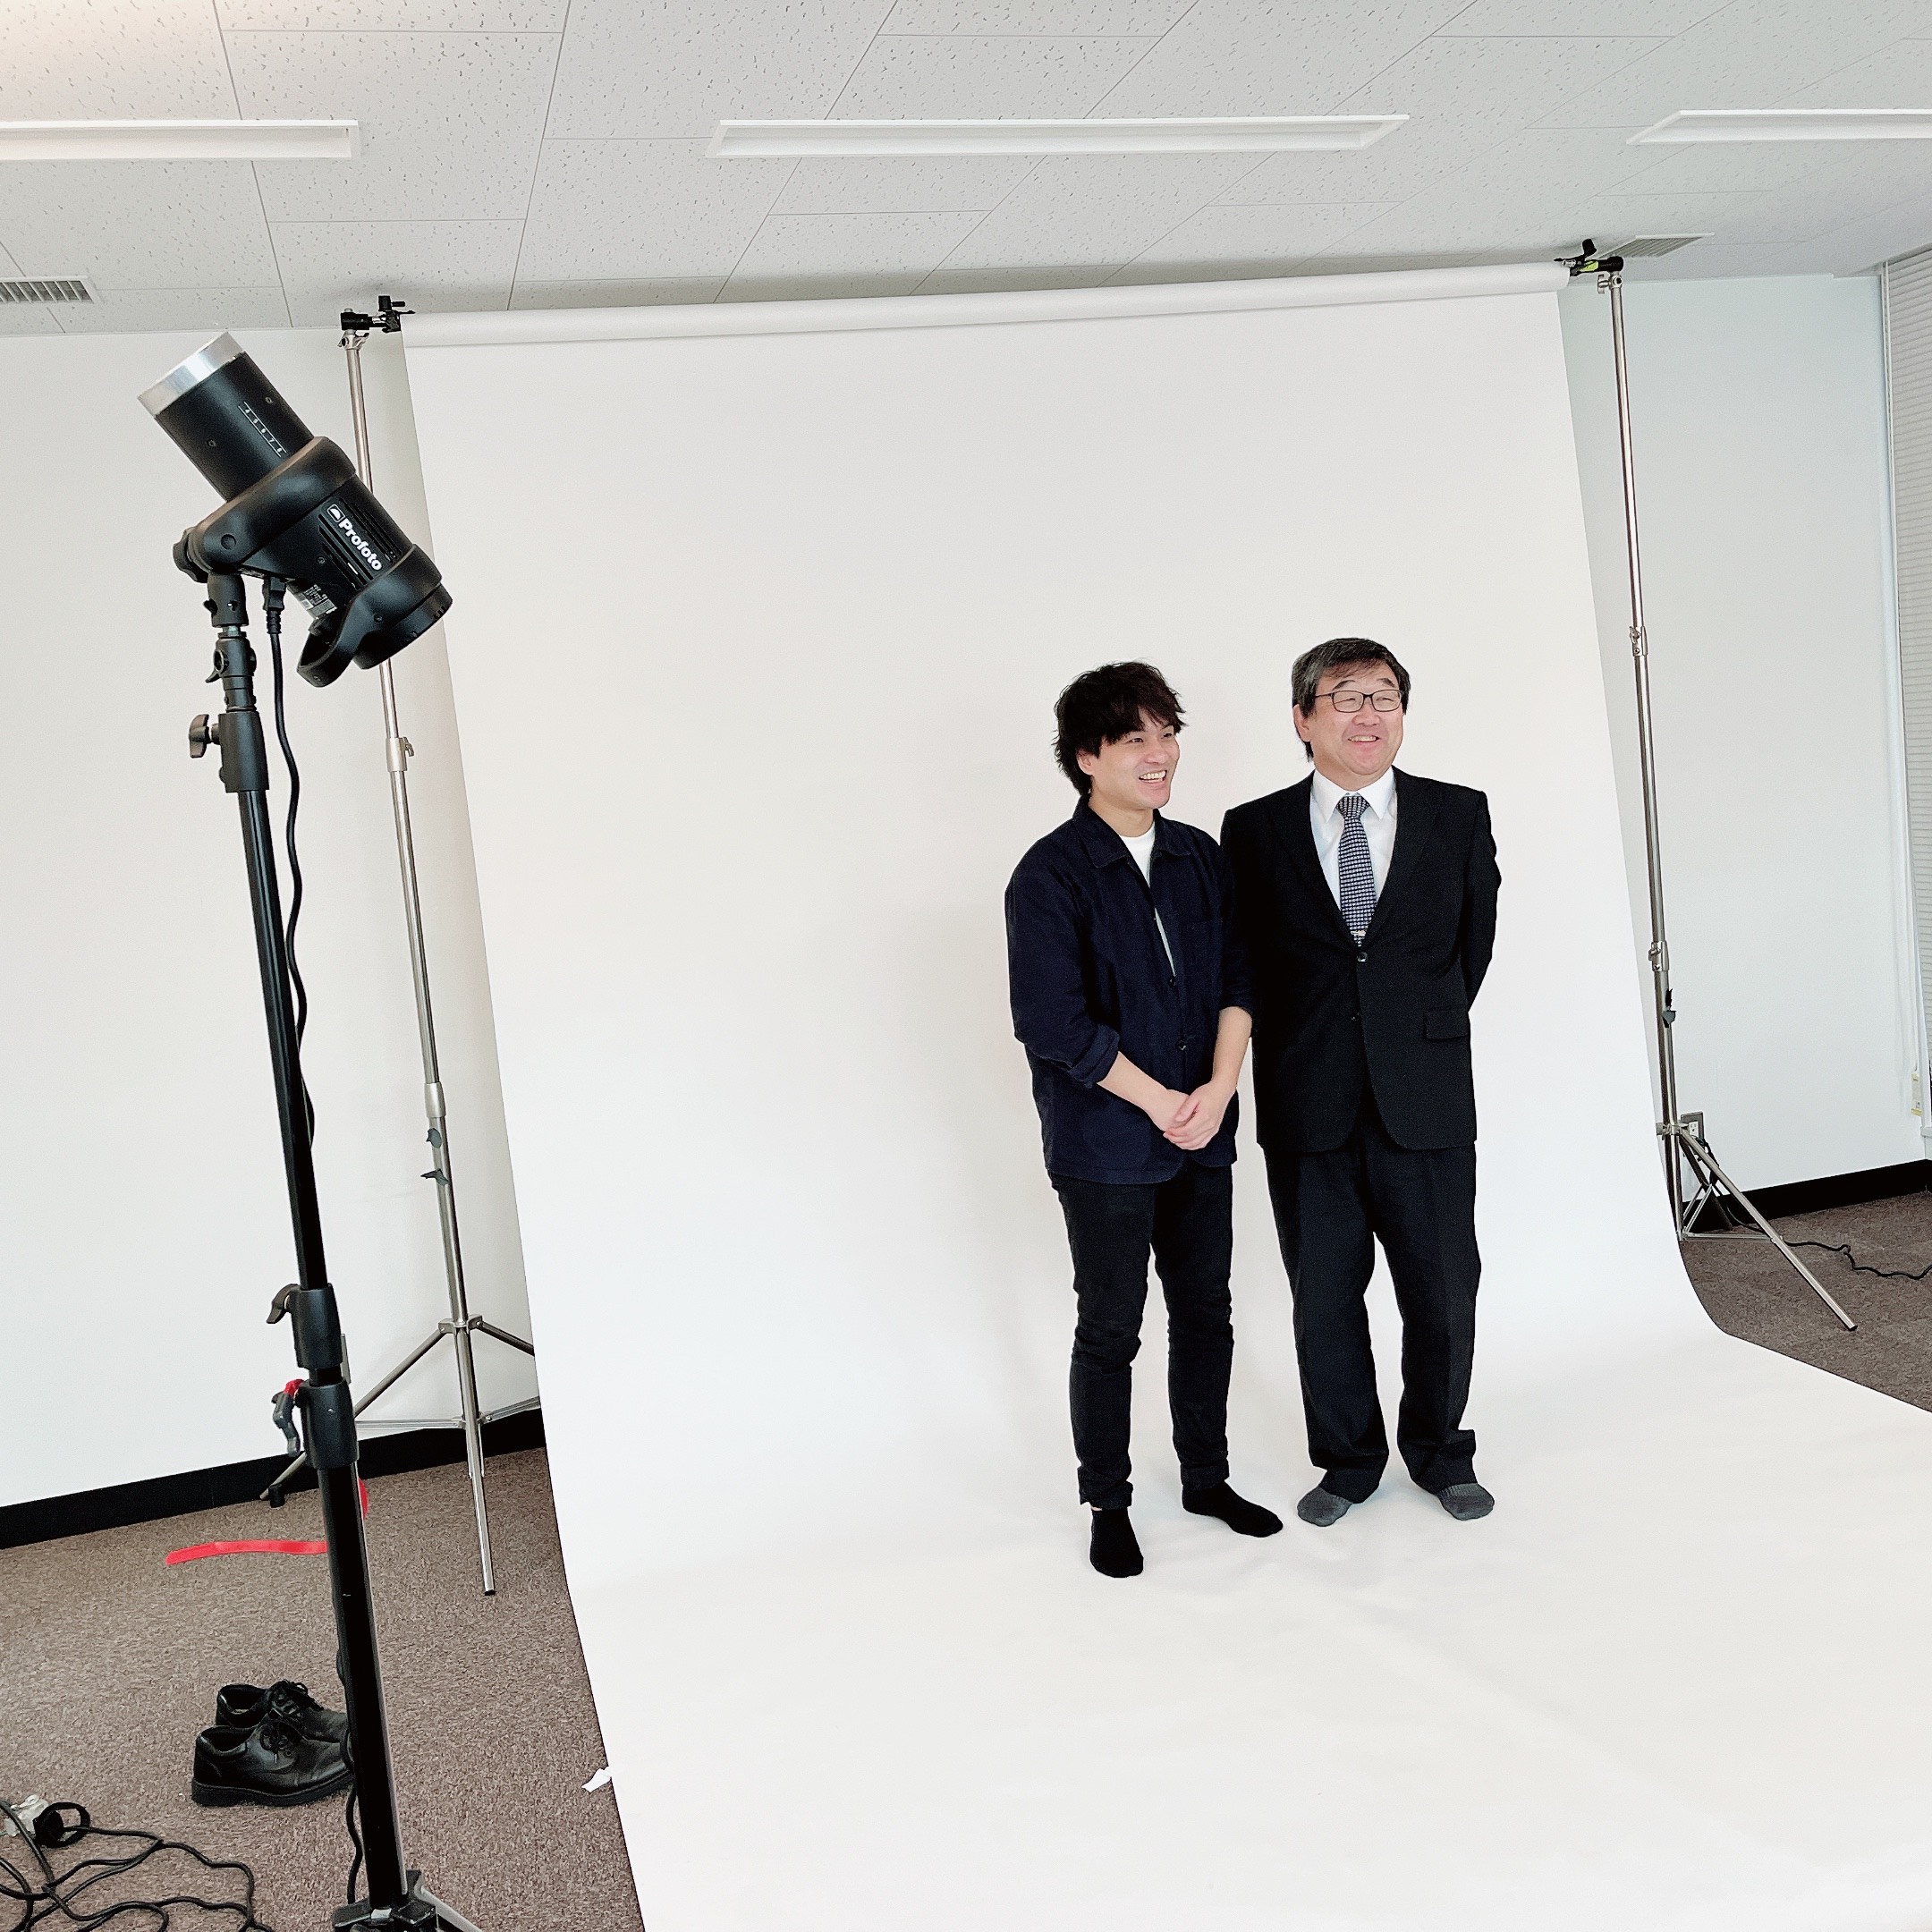 記事 坂根教授と卒業生の柴谷君がききょう通信の撮影を行いました♪のアイキャッチ画像